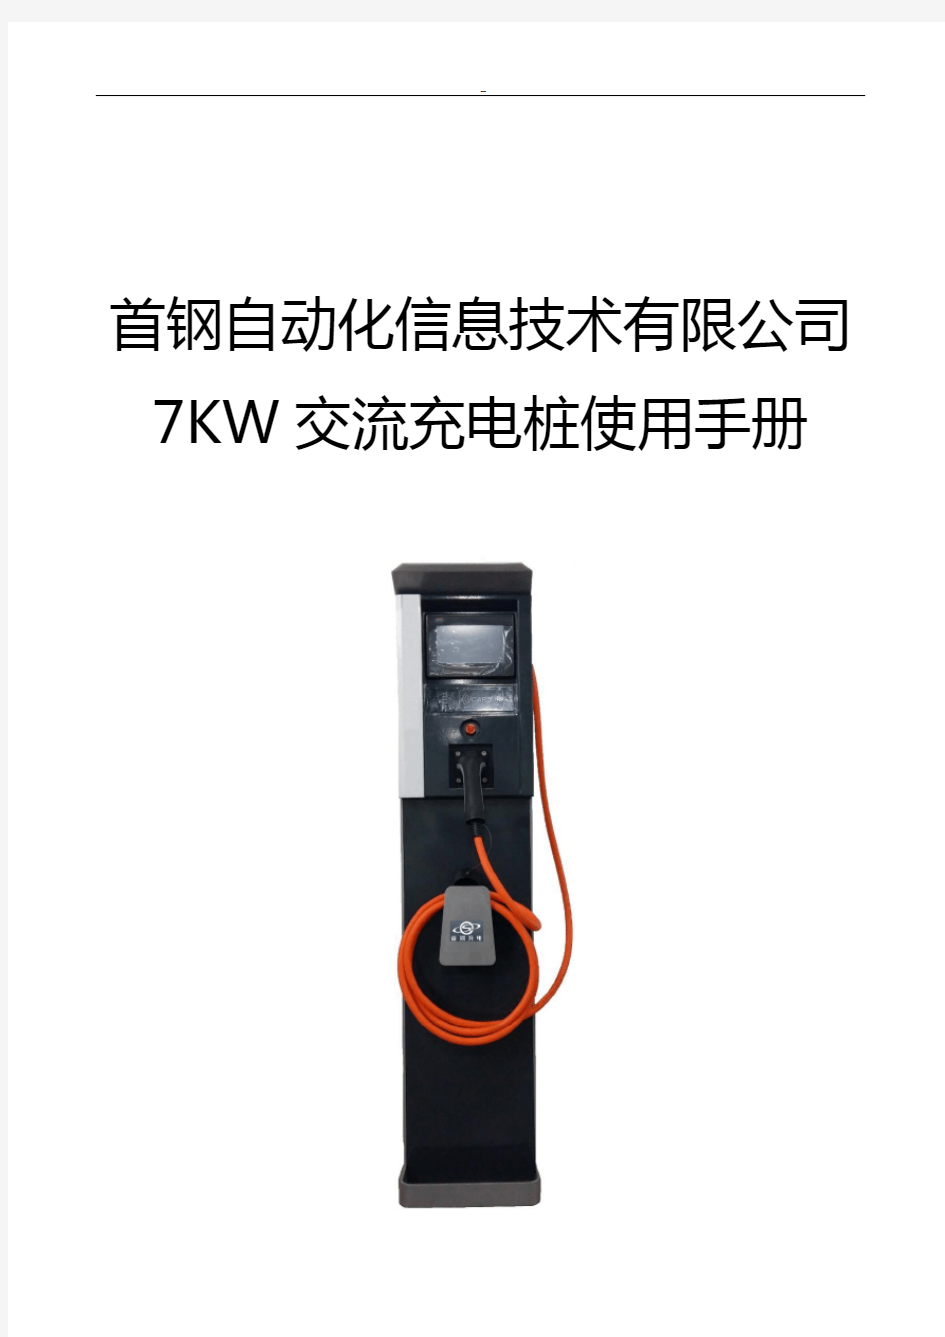 7KW交流交流充电桩使用说明